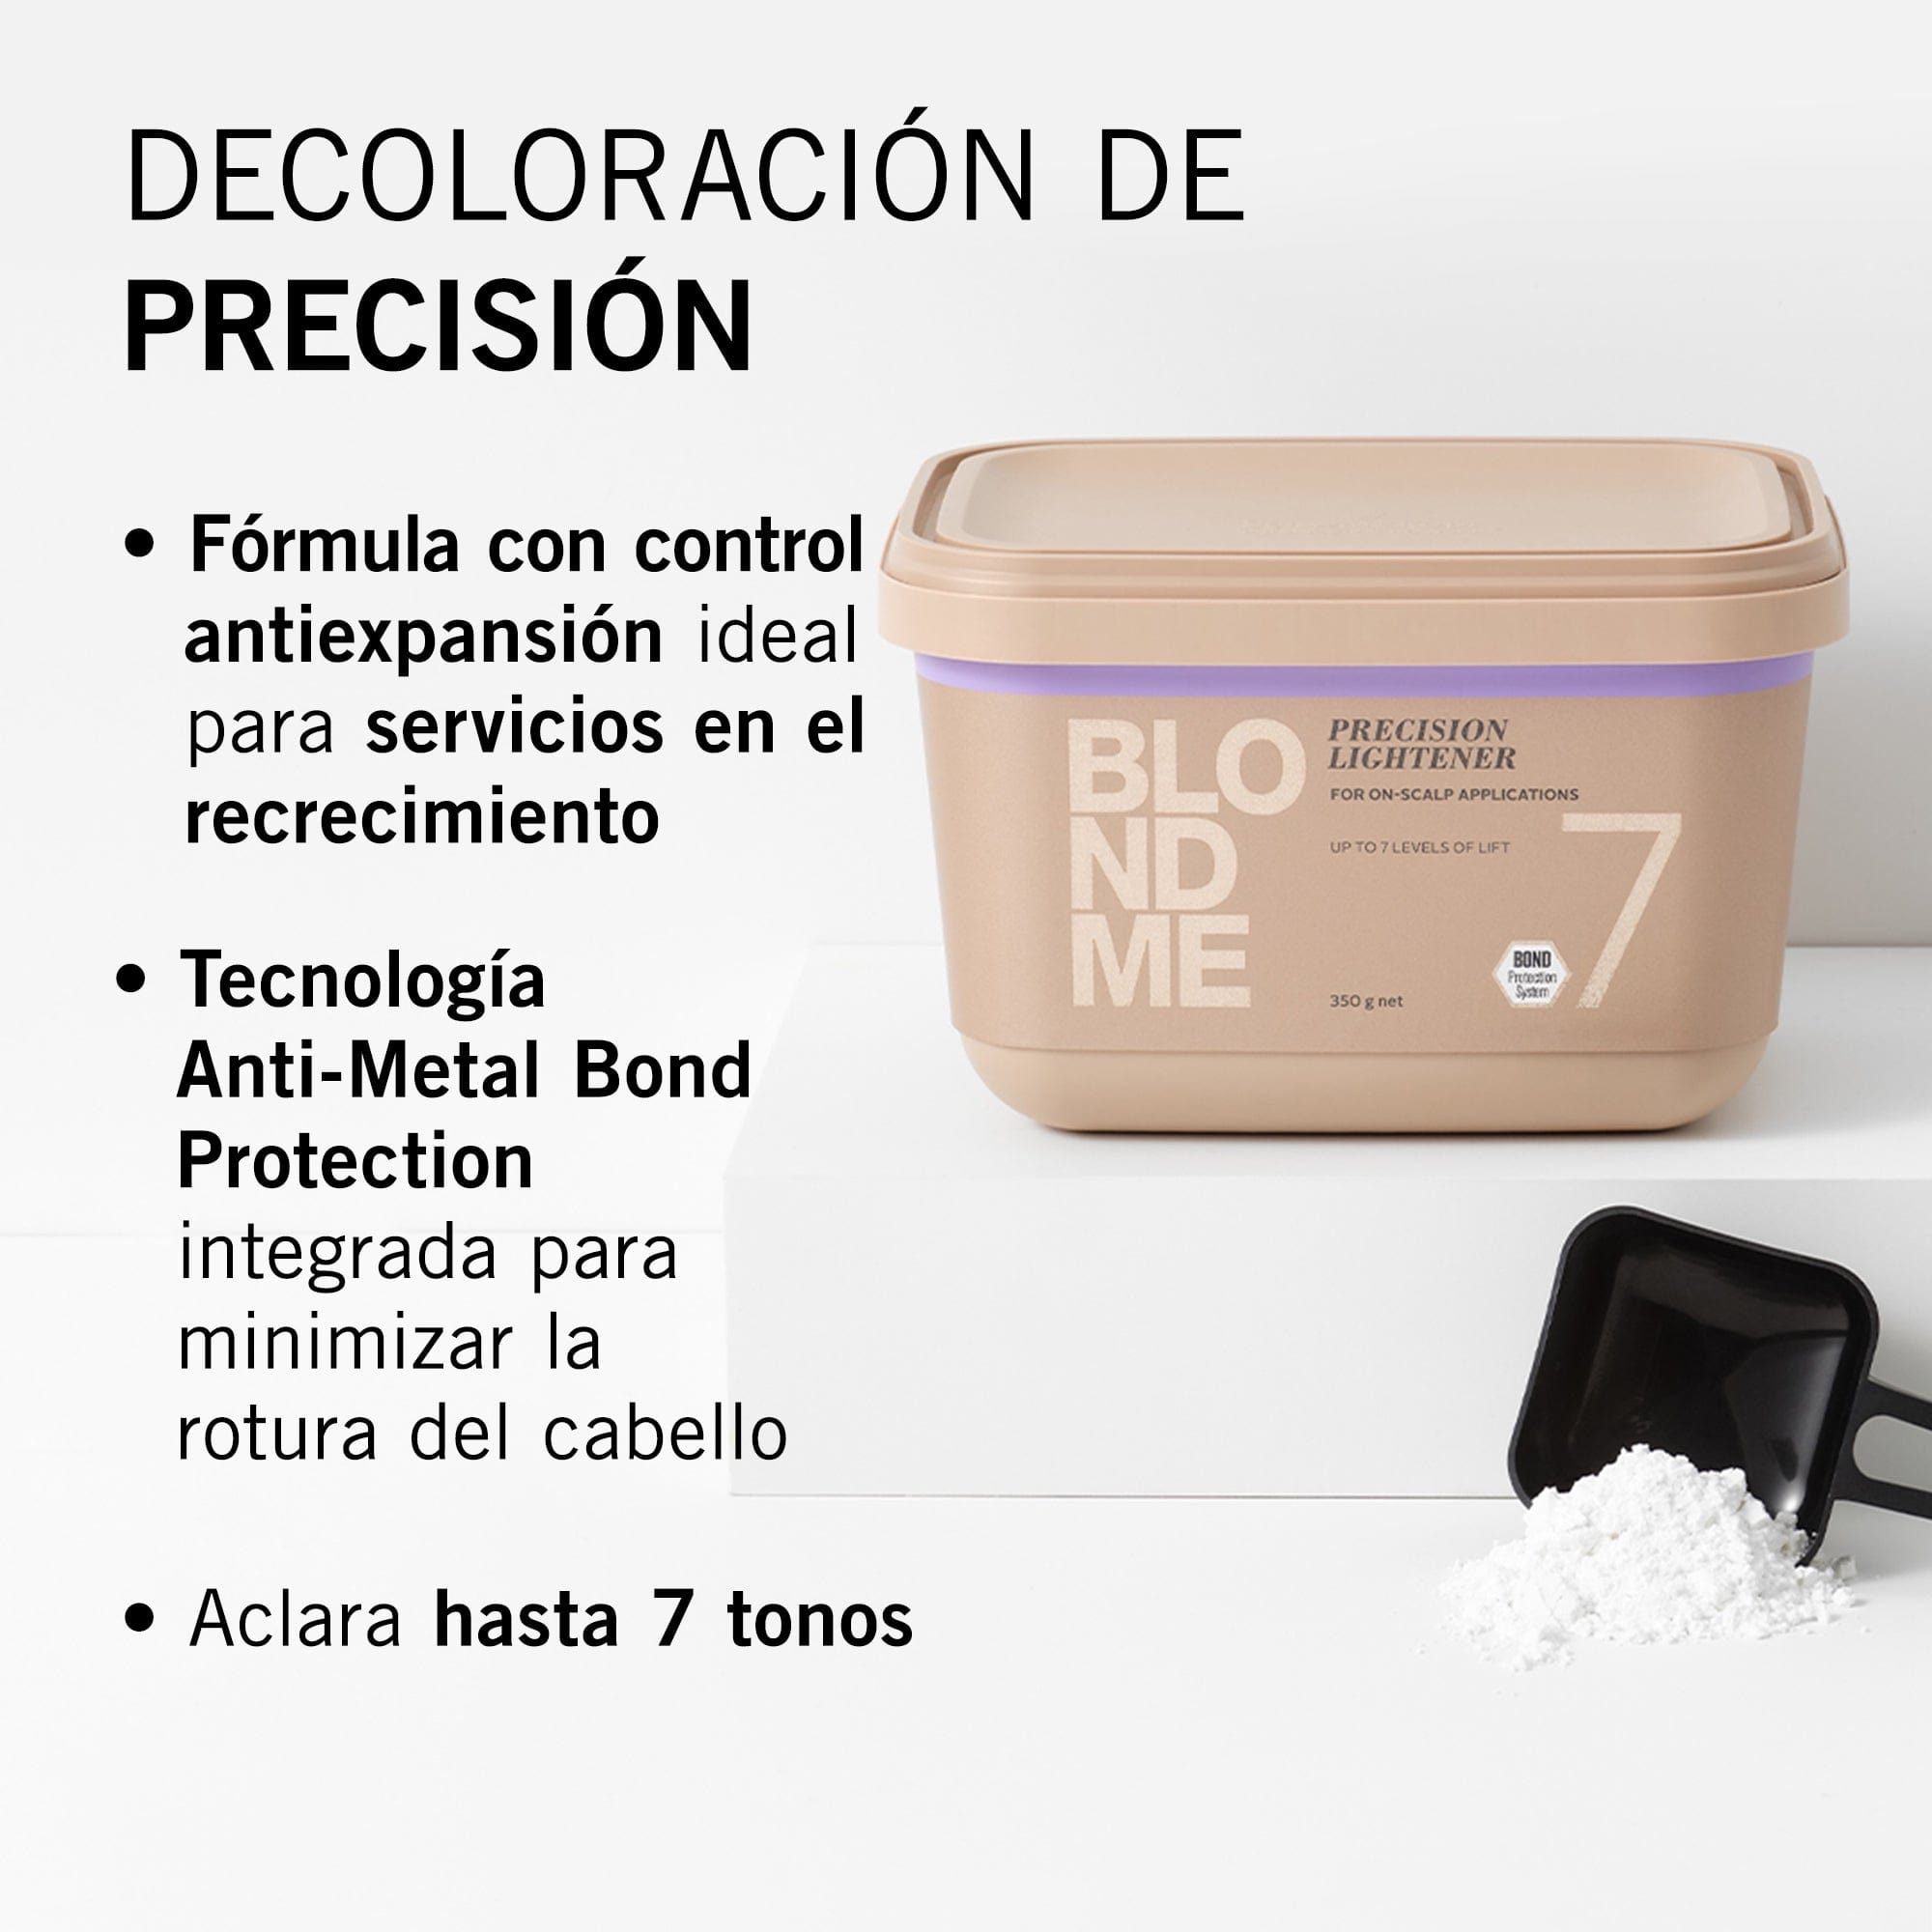 BLONDME Decoloración BLONDME Decoloración de Precisión 350g Roberta Beauty Club Tienda Online Productos de Peluqueria